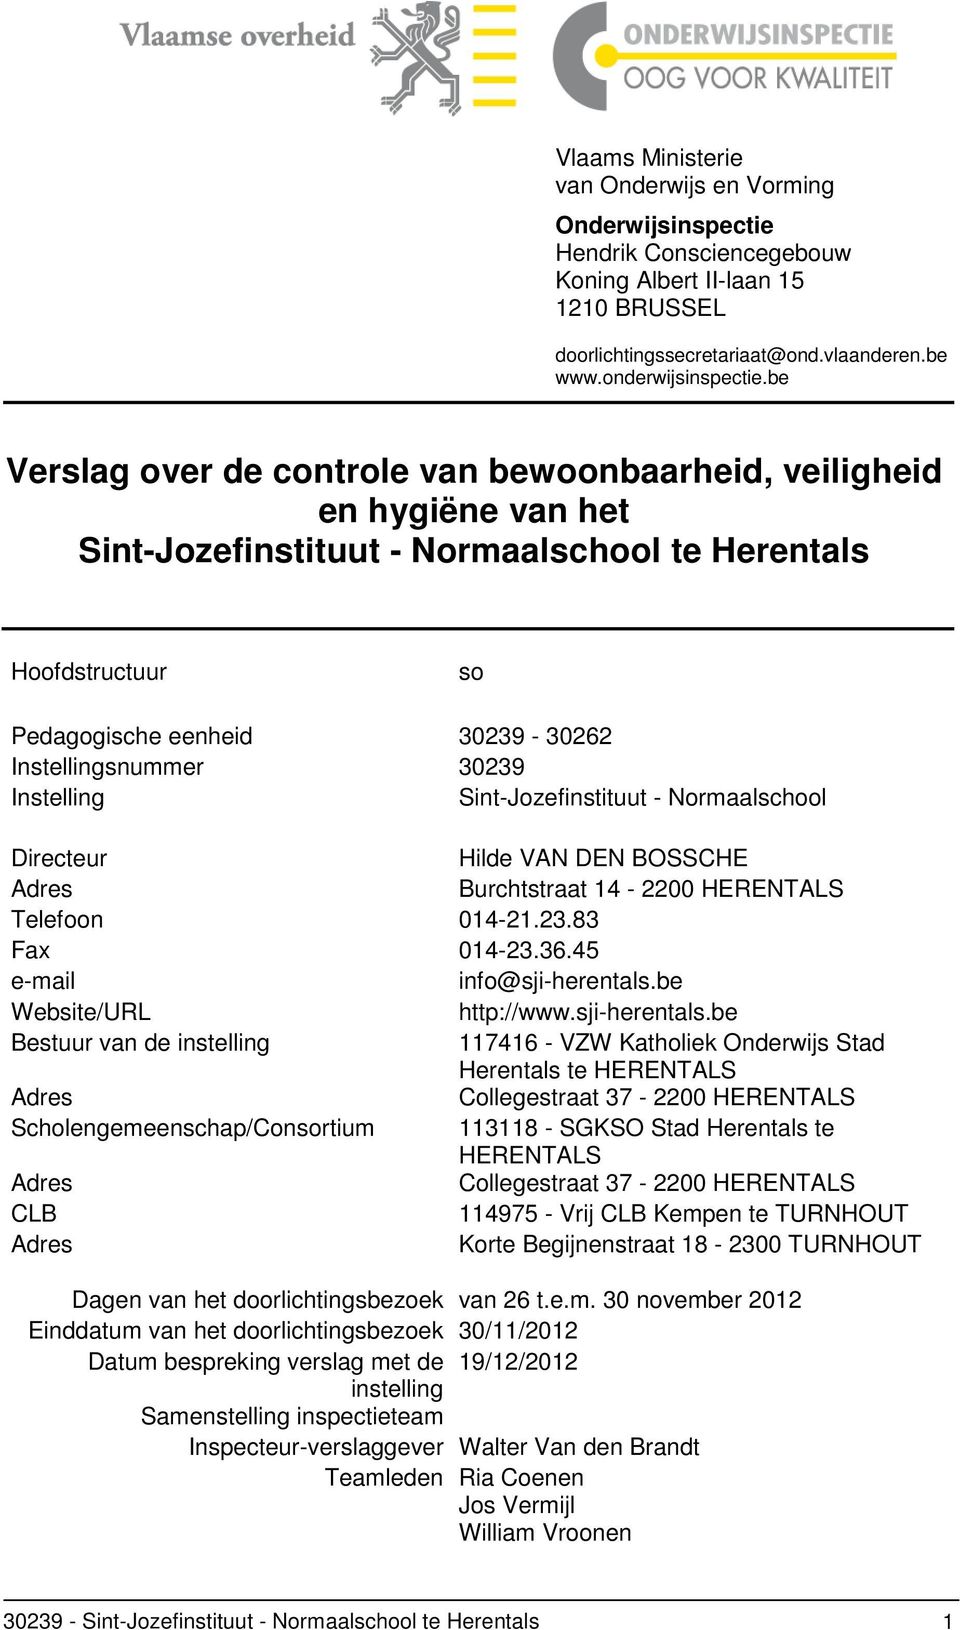 30239 Instelling Sint-Jozefinstituut - Normaalschool Directeur Hilde VAN DEN BOSSCHE Adres Burchtstraat 14-2200 HERENTALS Telefoon 014-21.23.83 Fax 014-23.36.45 e-mail info@sji-herentals.